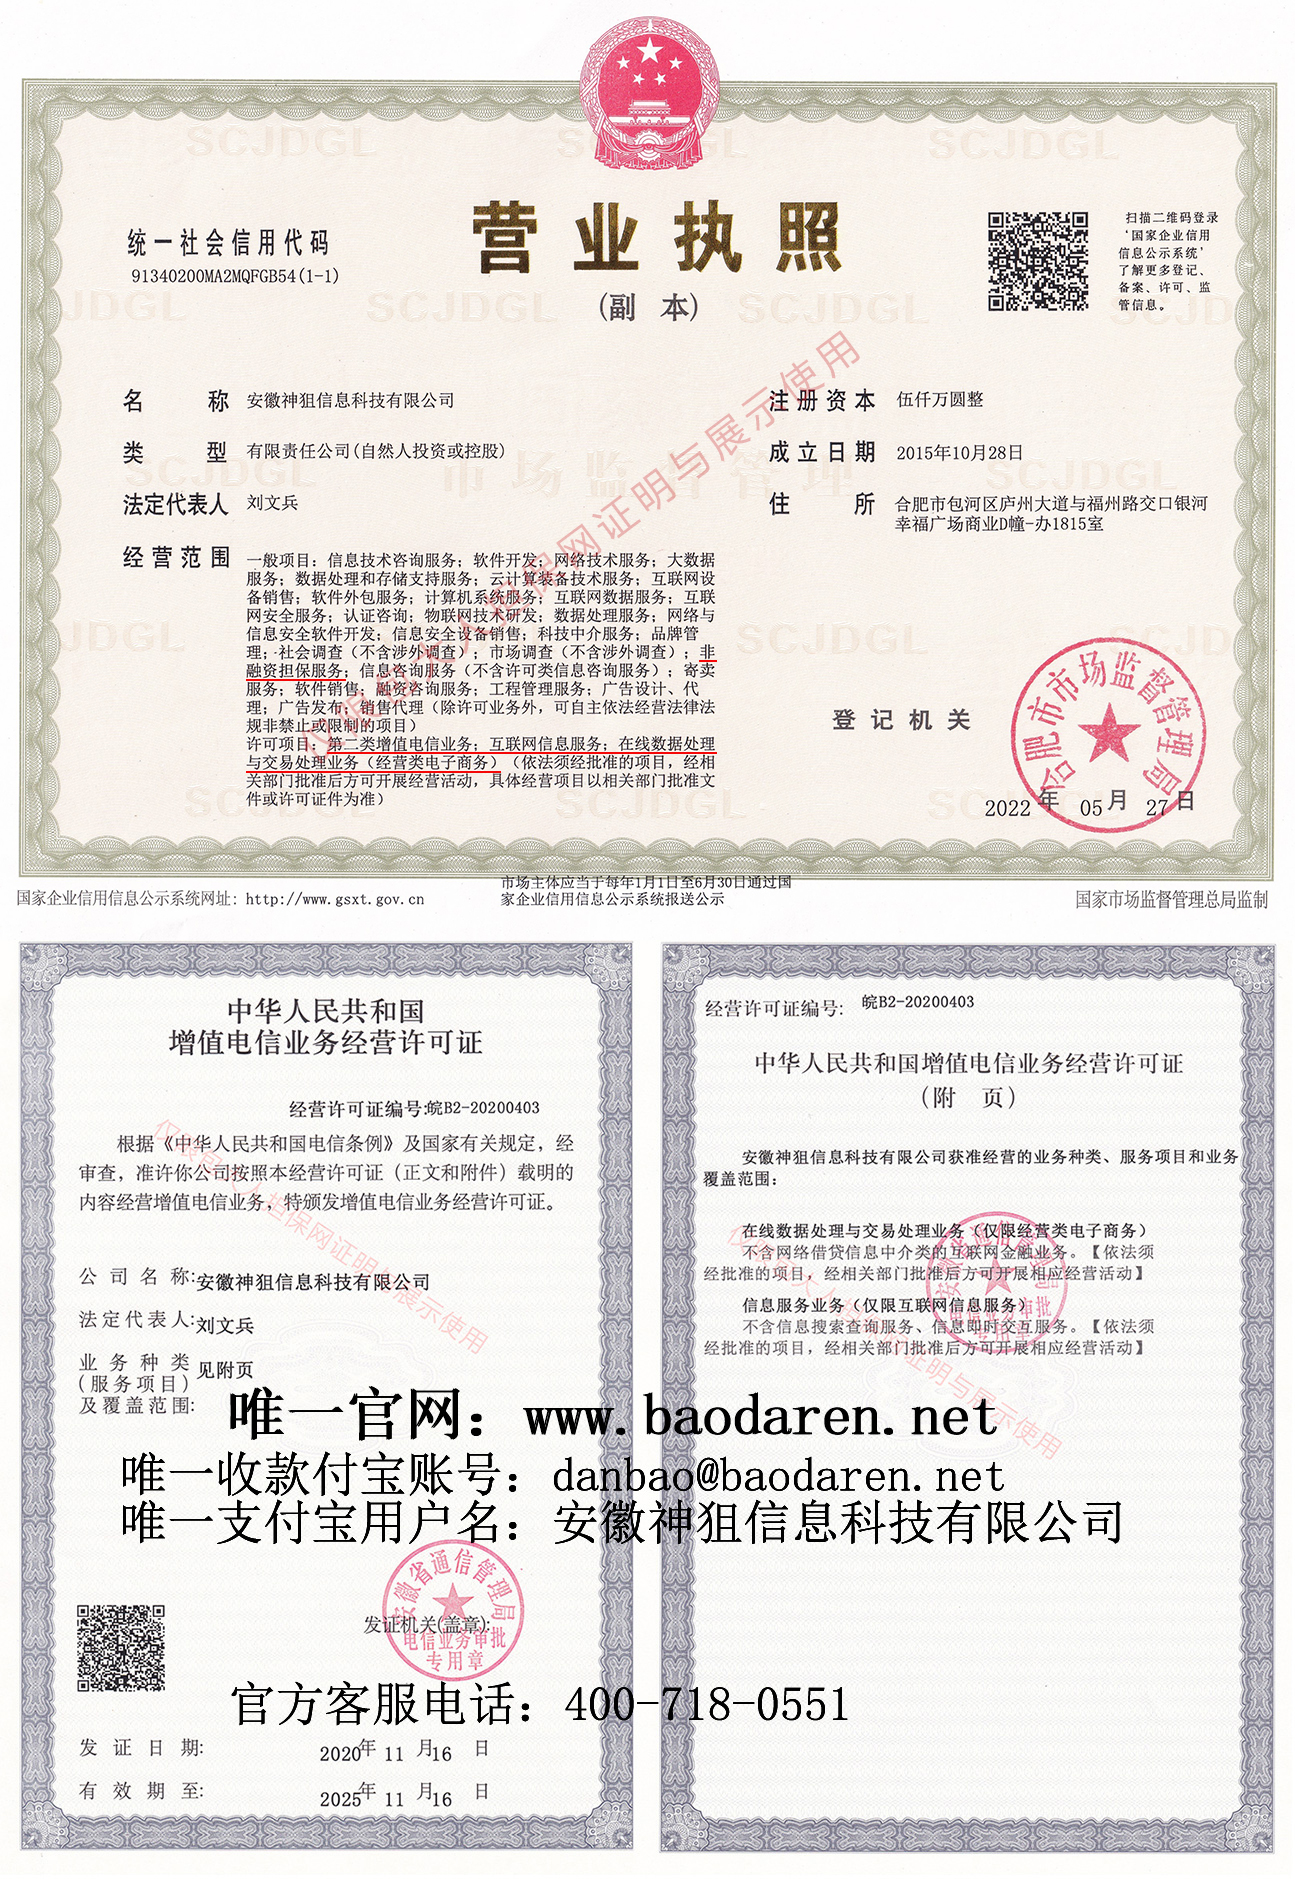 最新的执照和许可证图.jpg